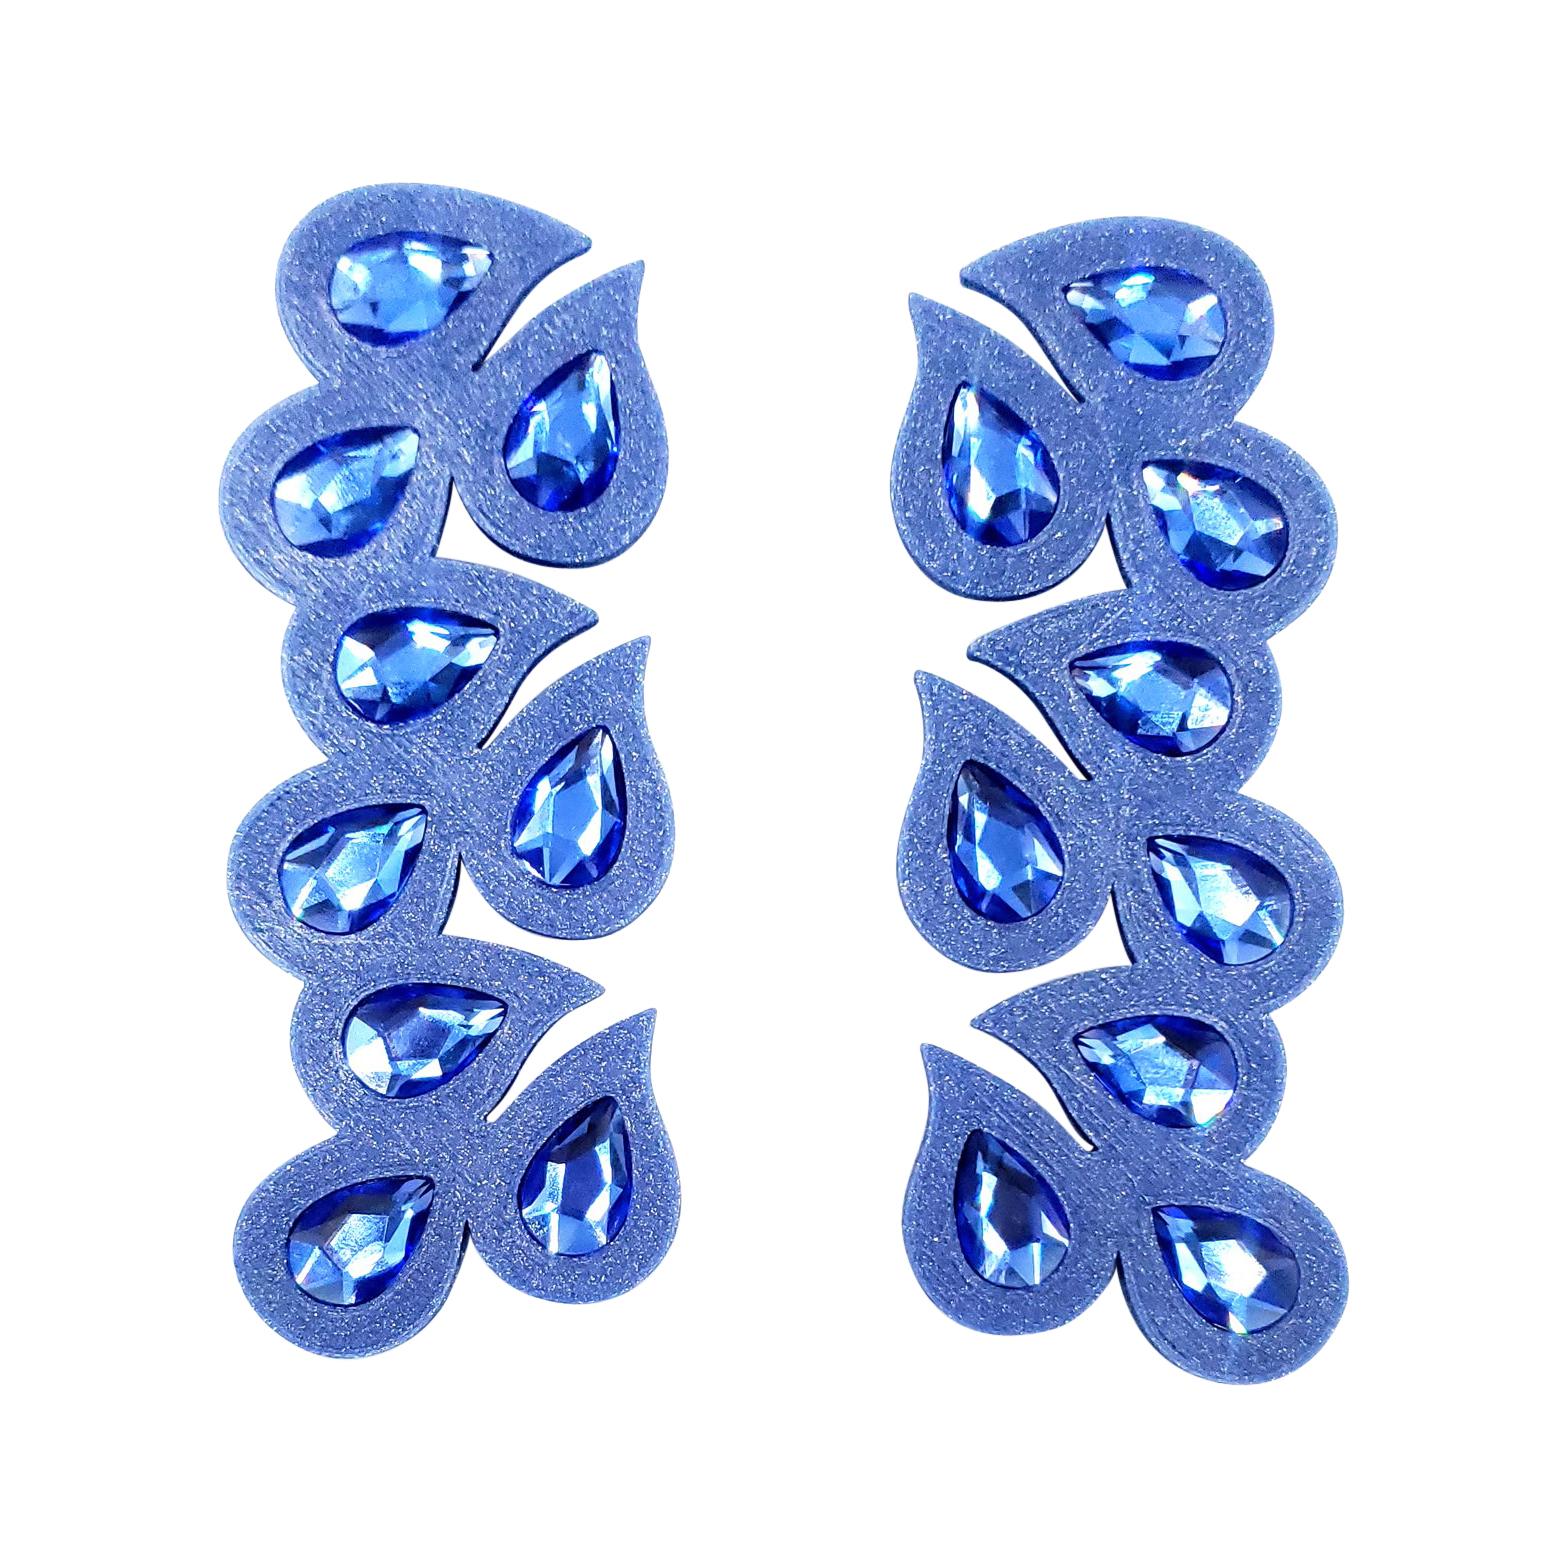 3d Printed Swarovski Crystal Juicy Earrings Cobalt Blue